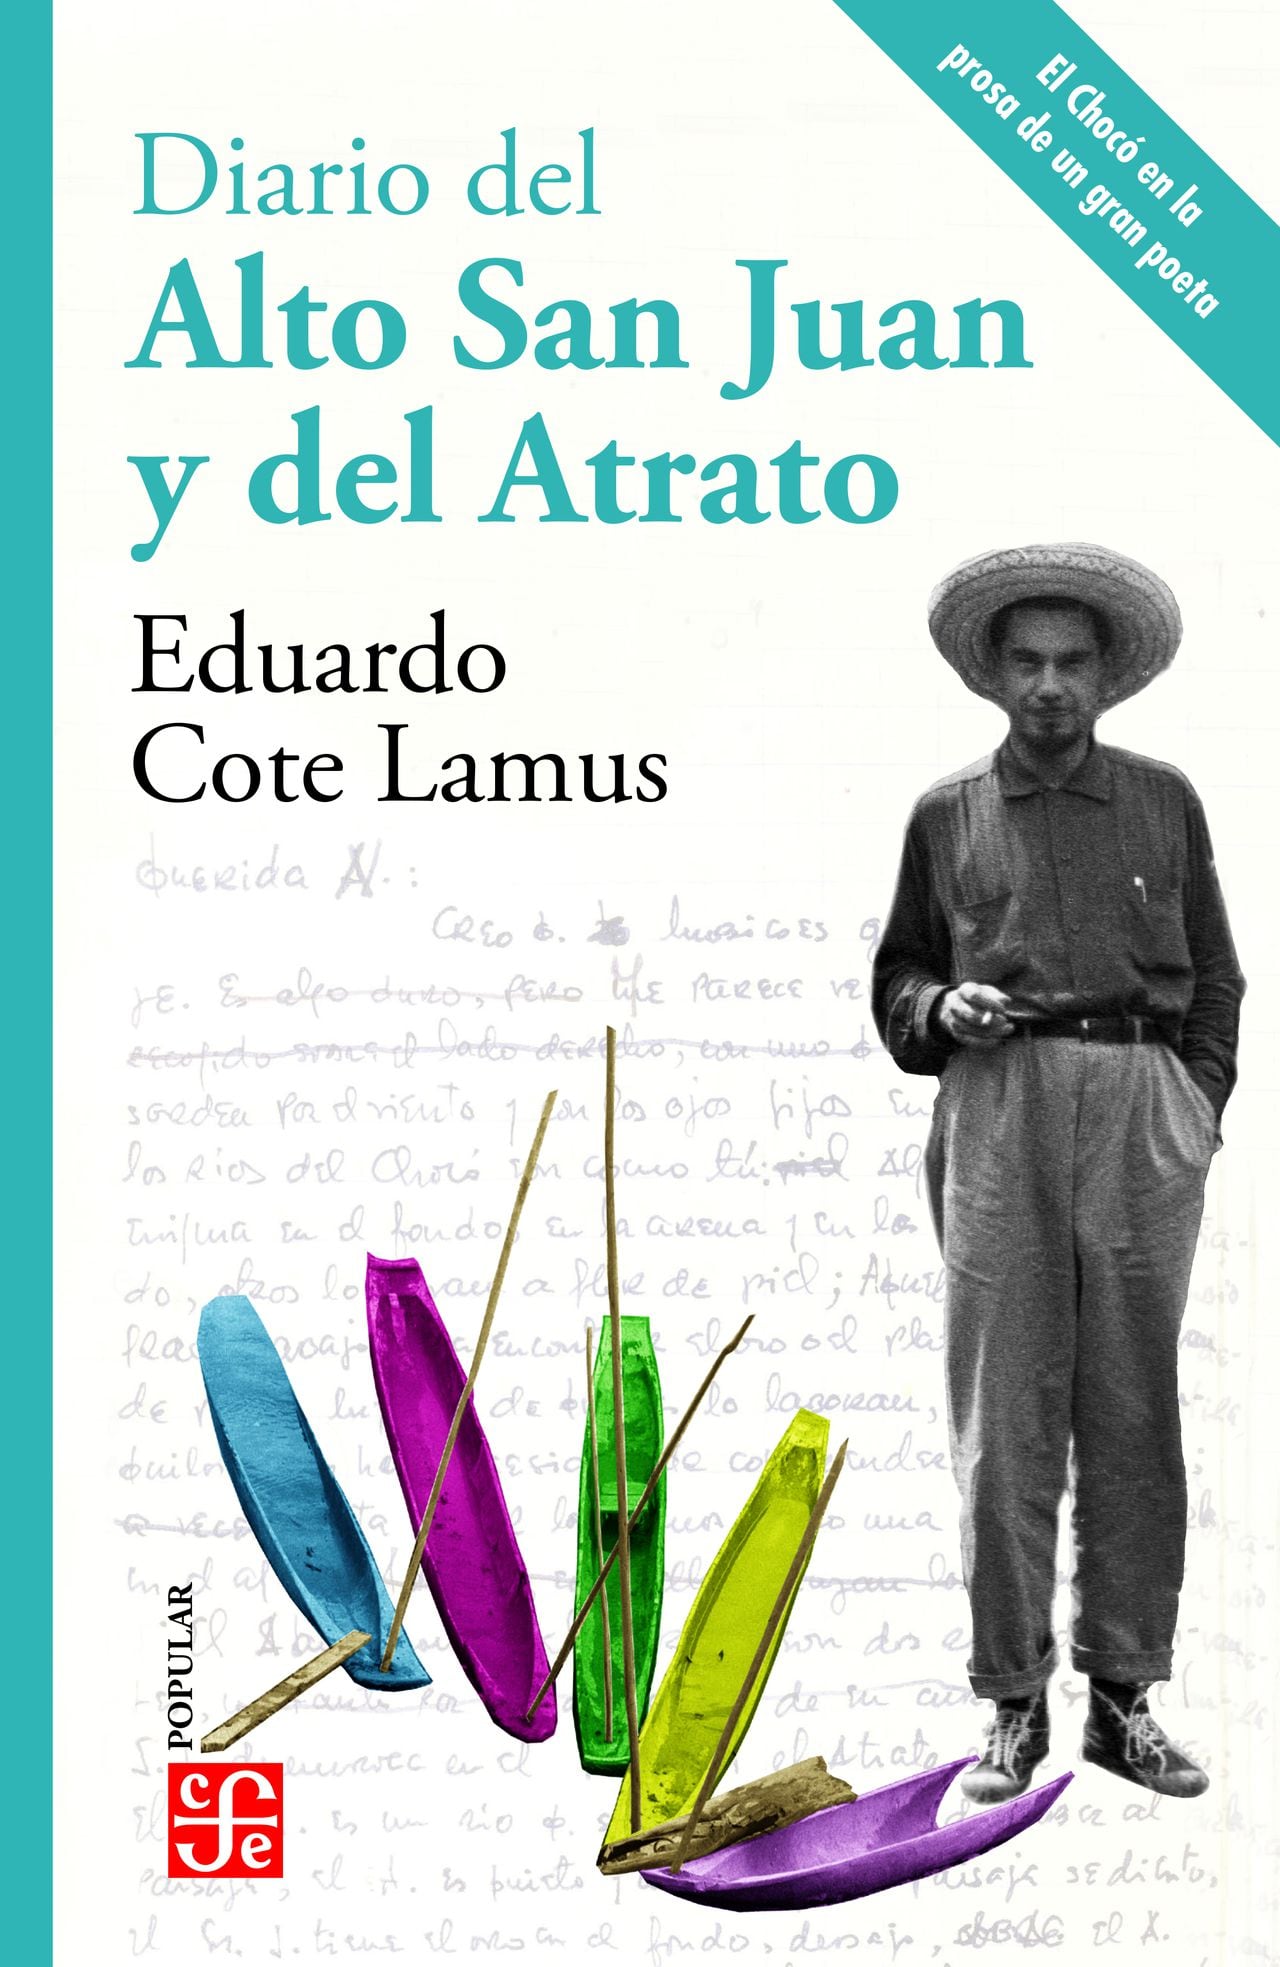 Diario del Alto San Juan y del Atrato, nueva edición del Fondo de Cultura Econónima.